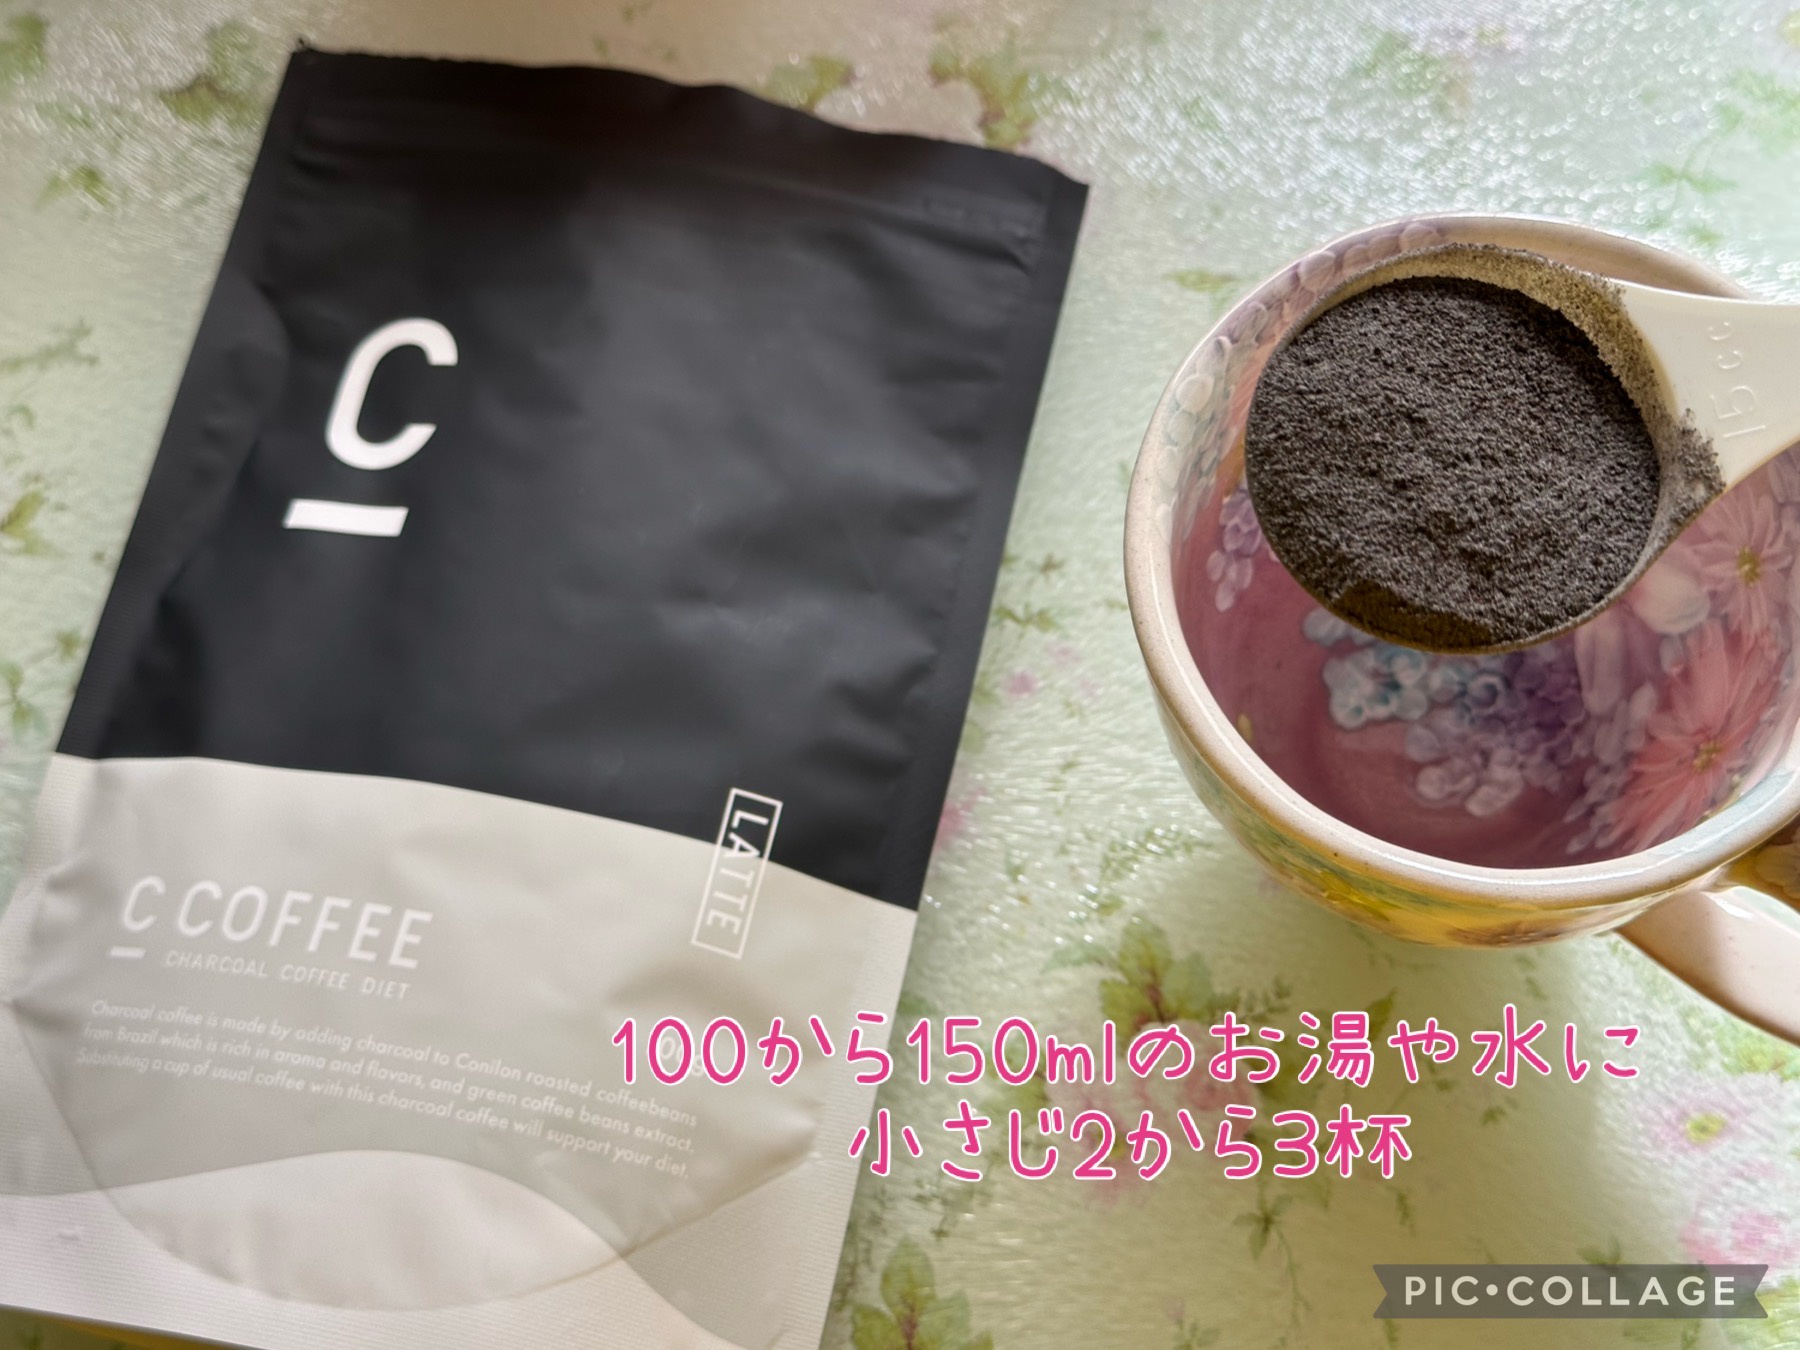 C COFFEE シーコーヒー チャコールコーヒー ダイエット - ダイエット食品